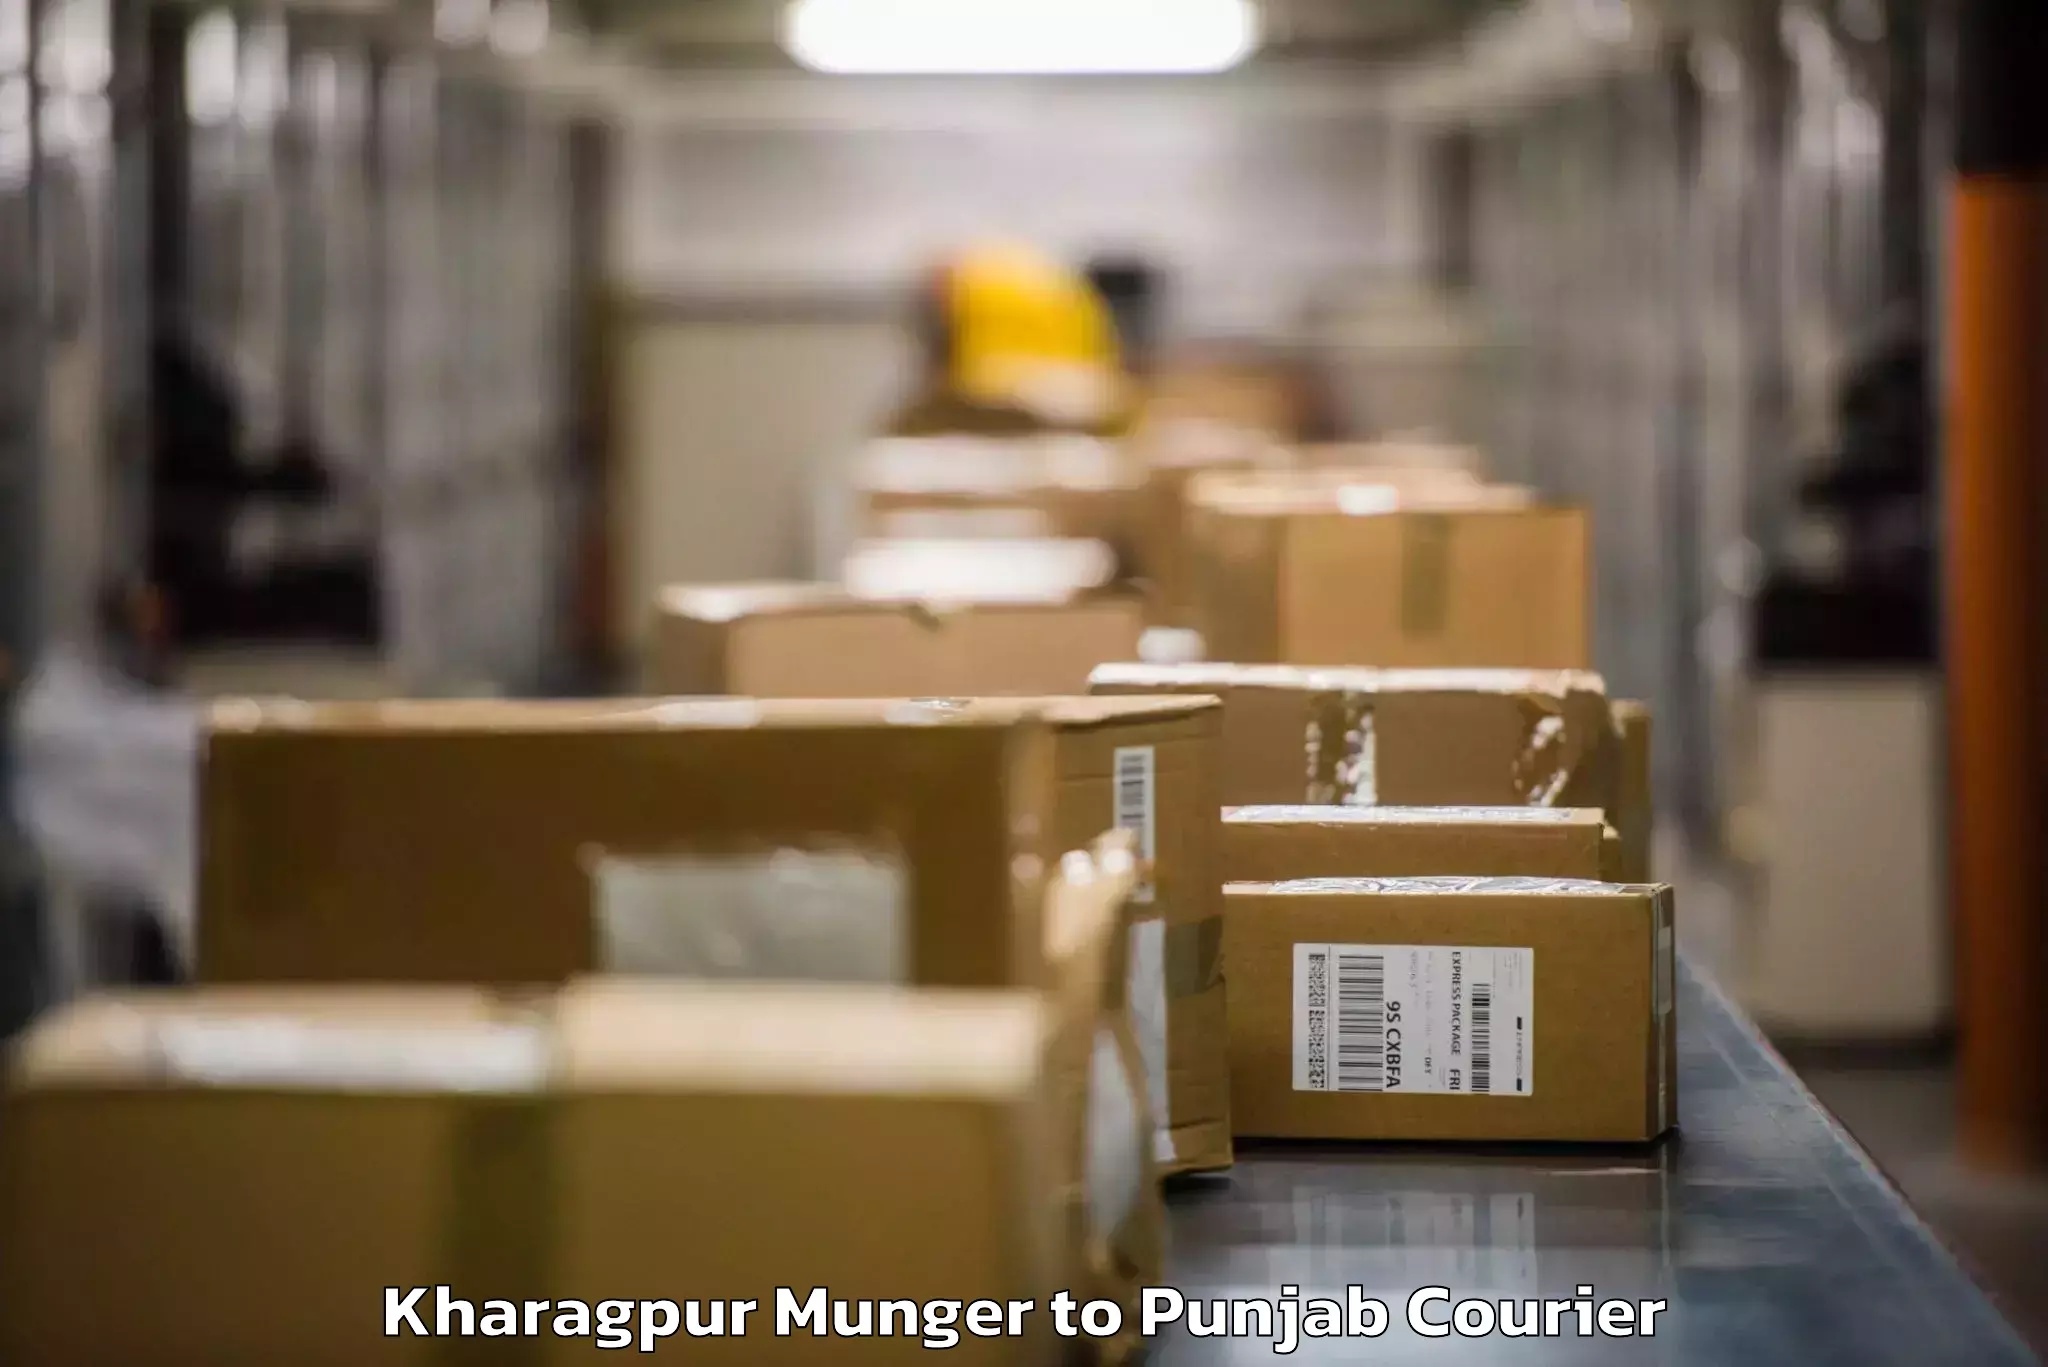 Baggage shipping logistics Kharagpur Munger to Punjab